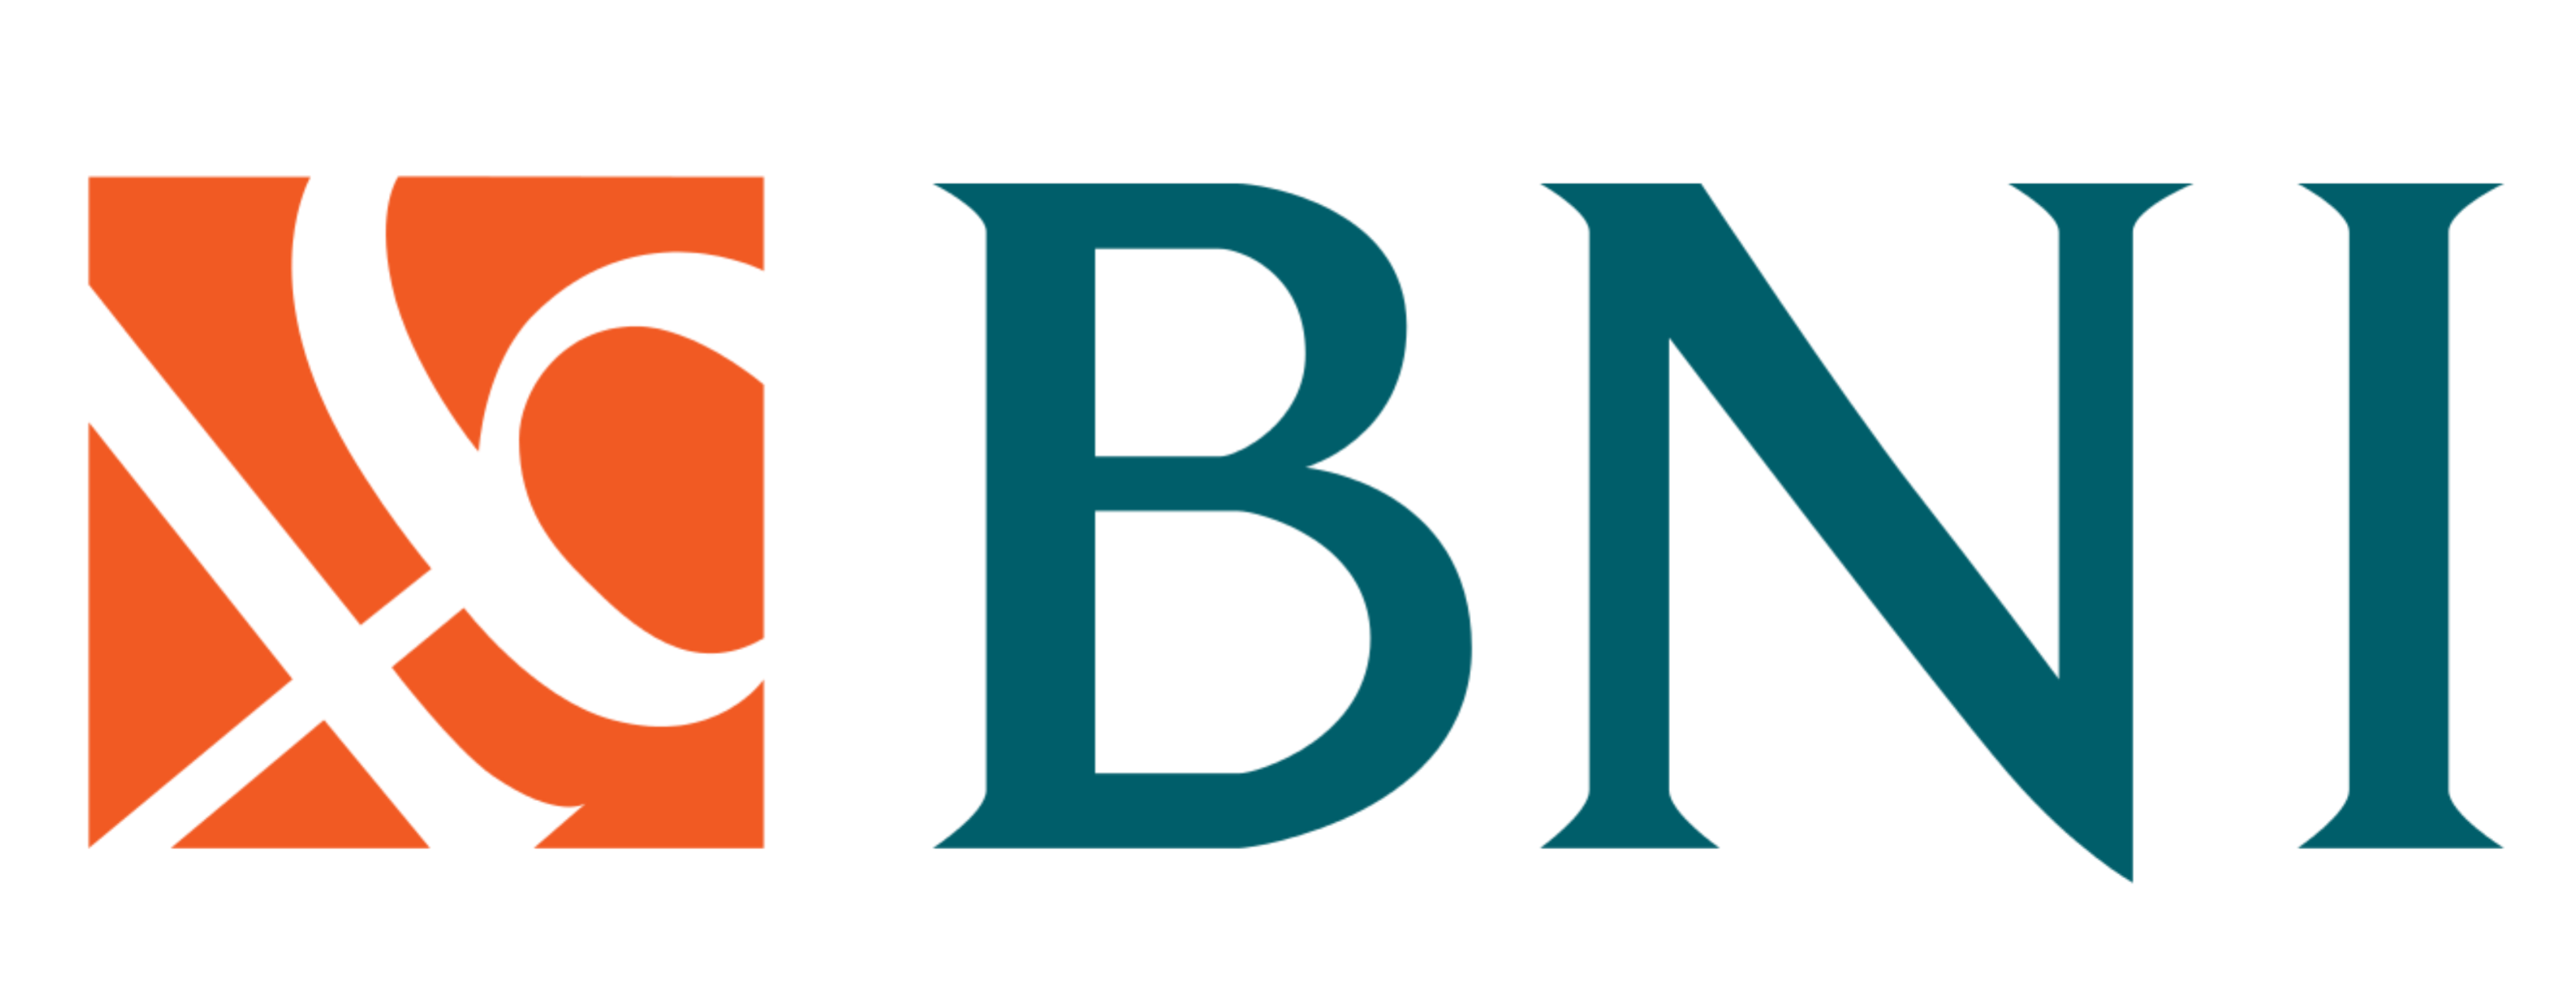 Logo-bank-BNI-1.png